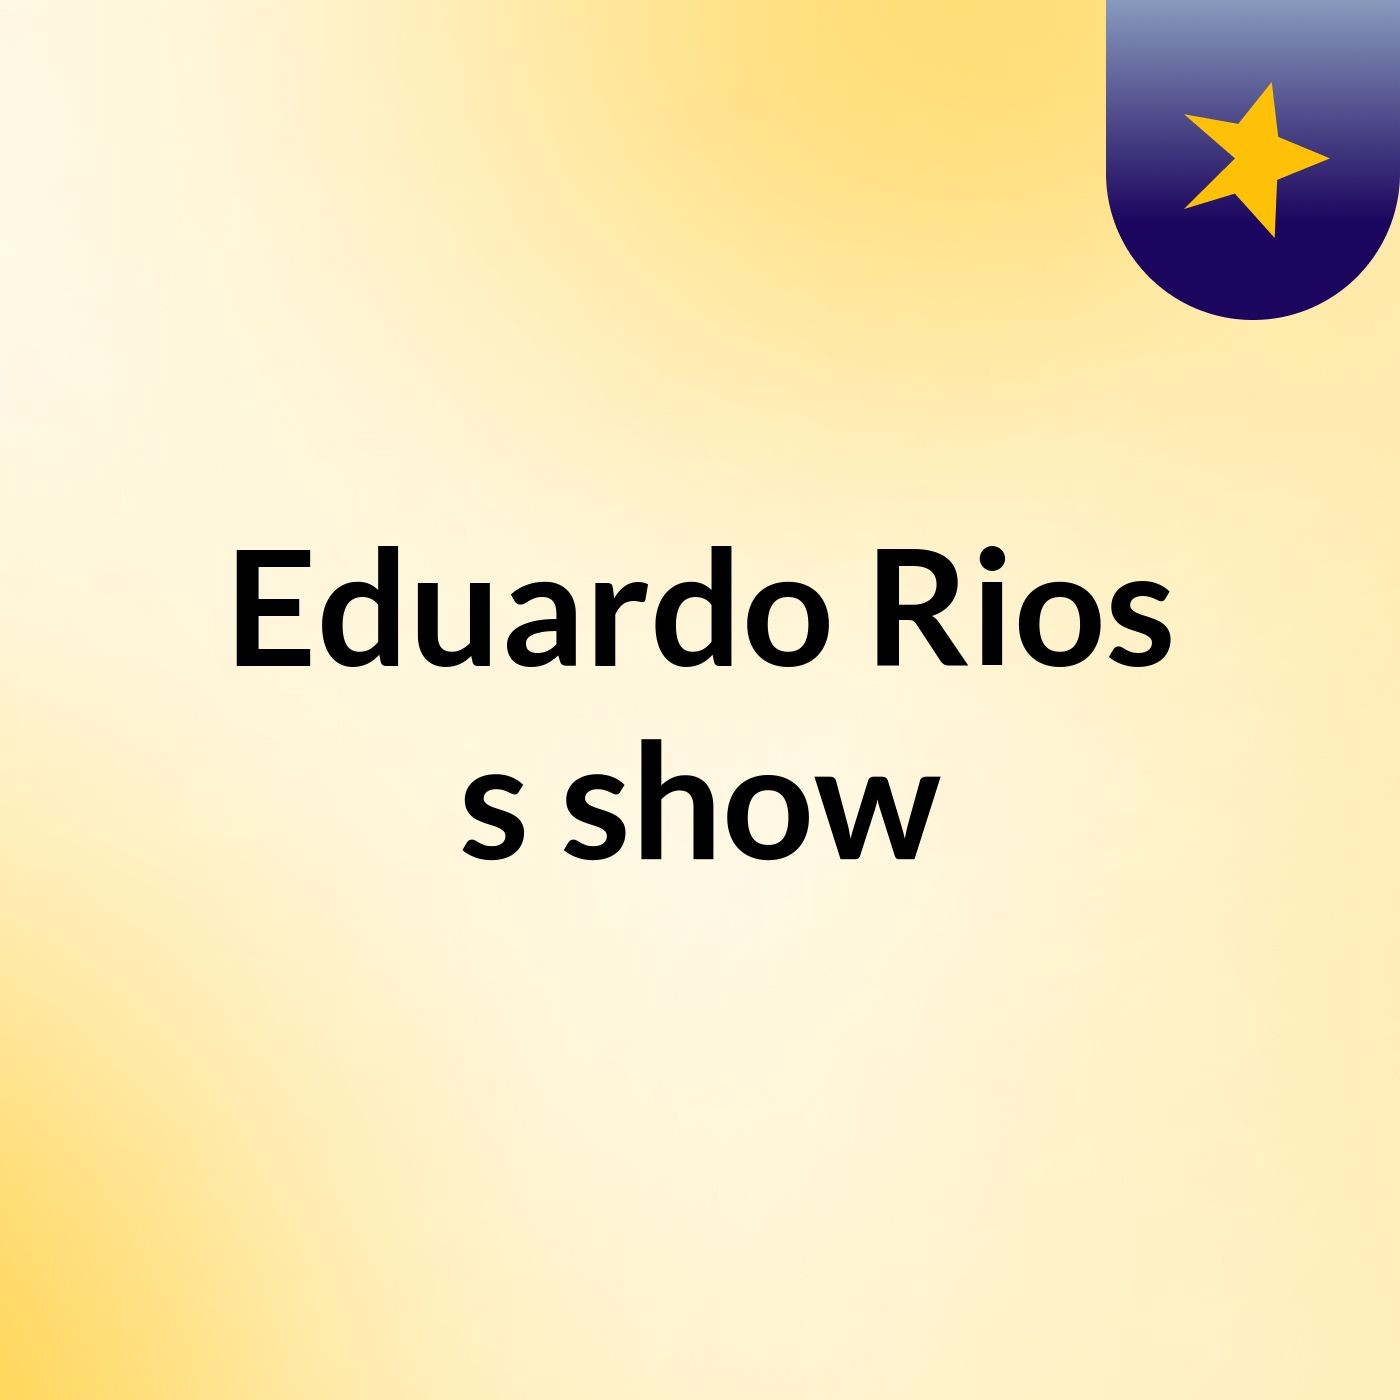 Eduardo Rios's show